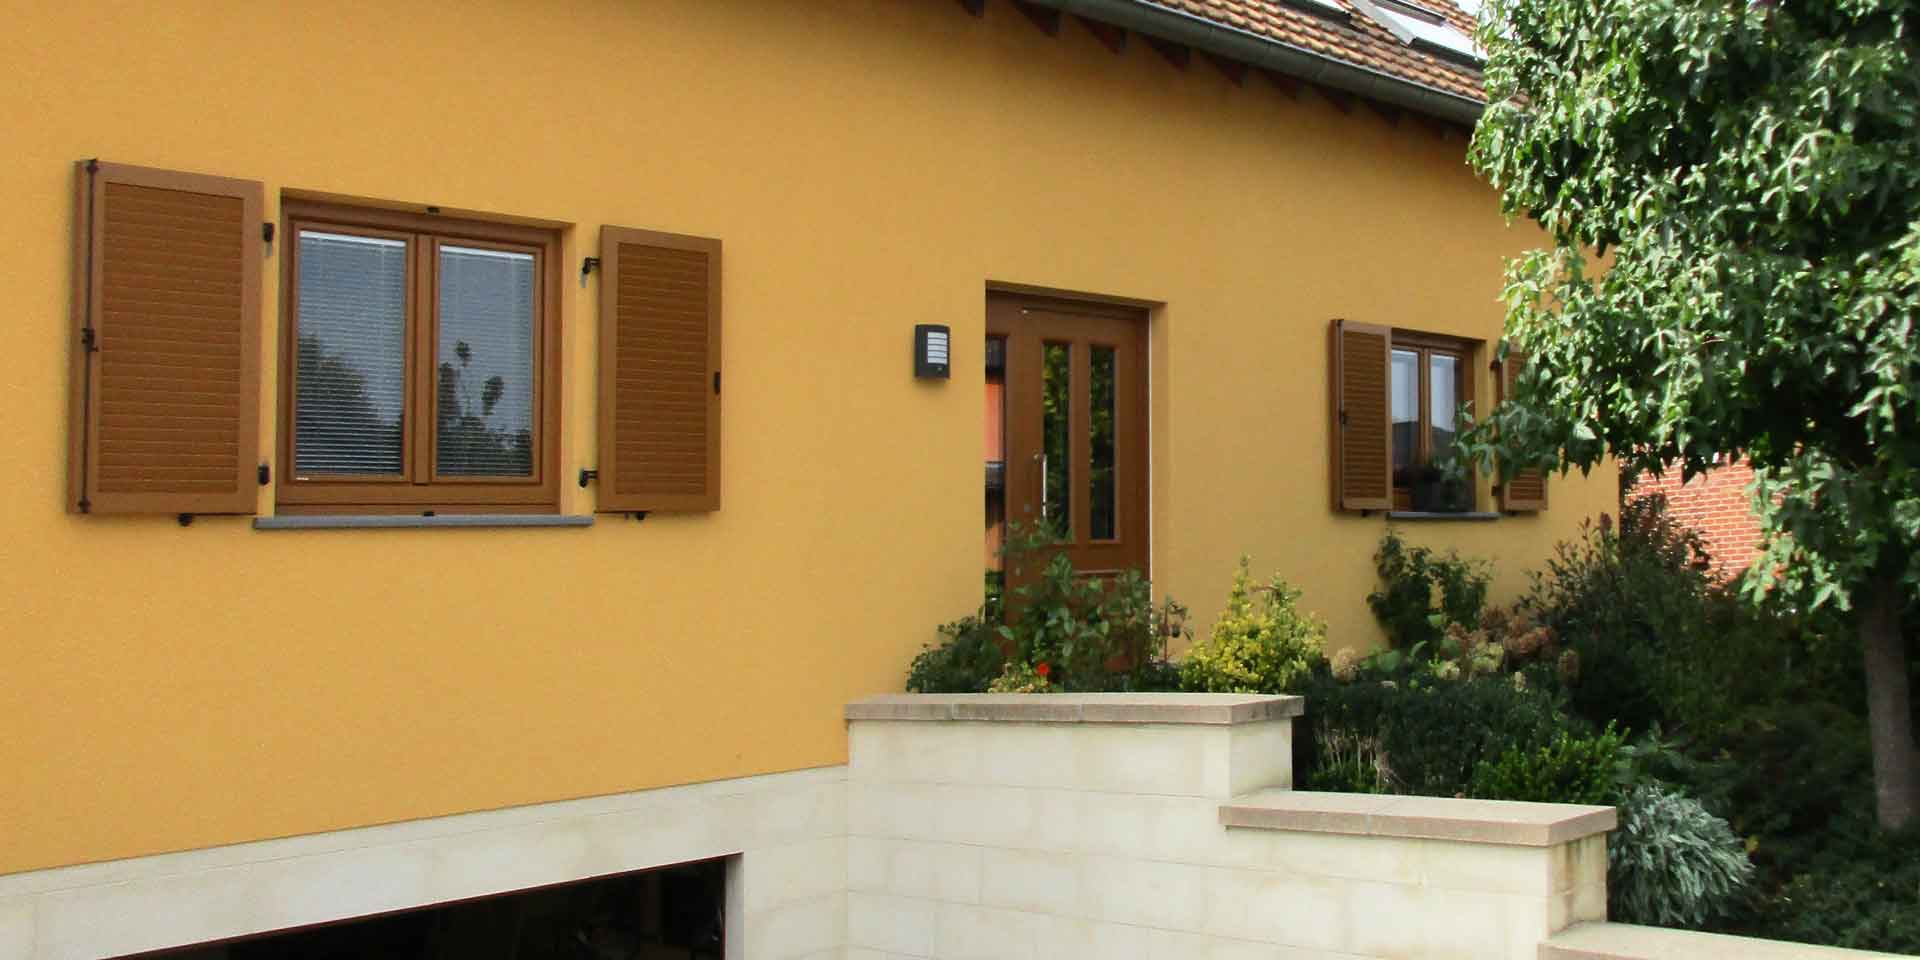 Oranges Einfamilienhaus mit einer brauner Coplaning Haustür mit Glasausschnitten.